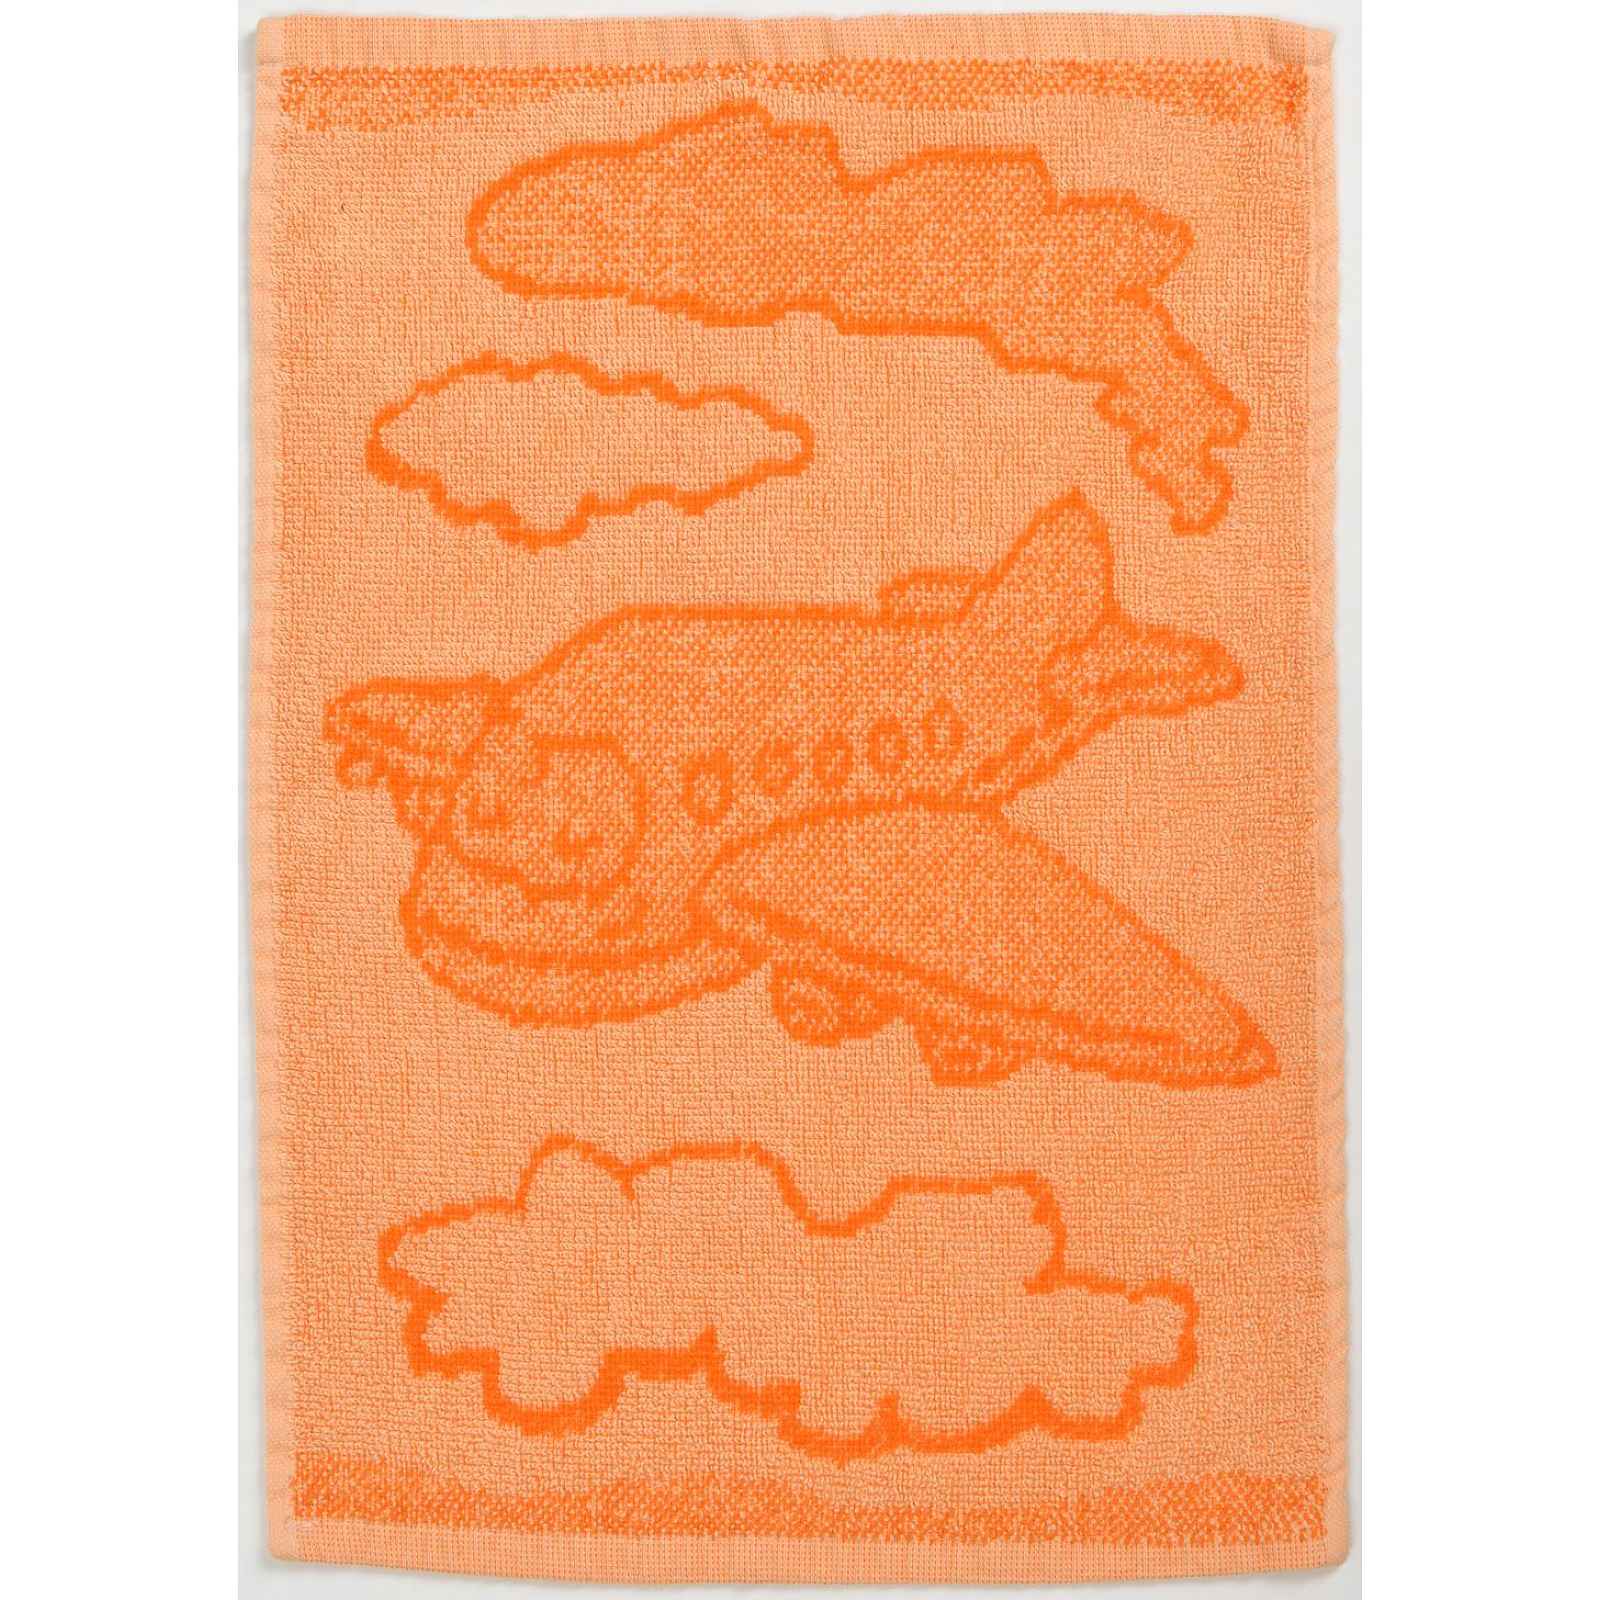 Dětský ručník BEBÉ letadlo oranžový 30x50 cm